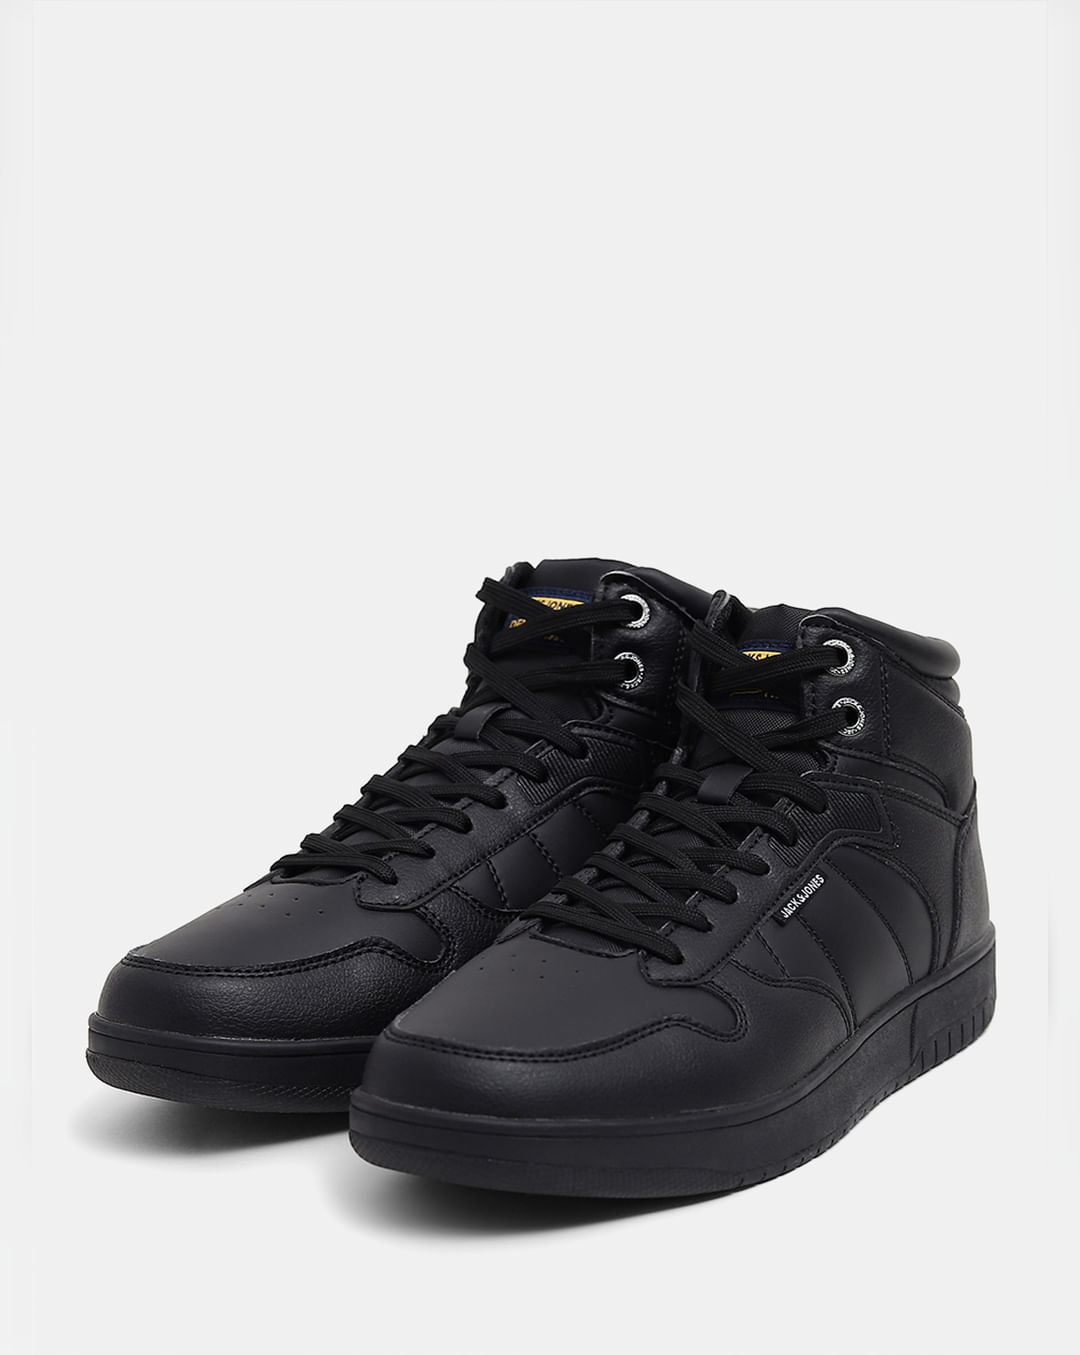 Black High Top Sneakers